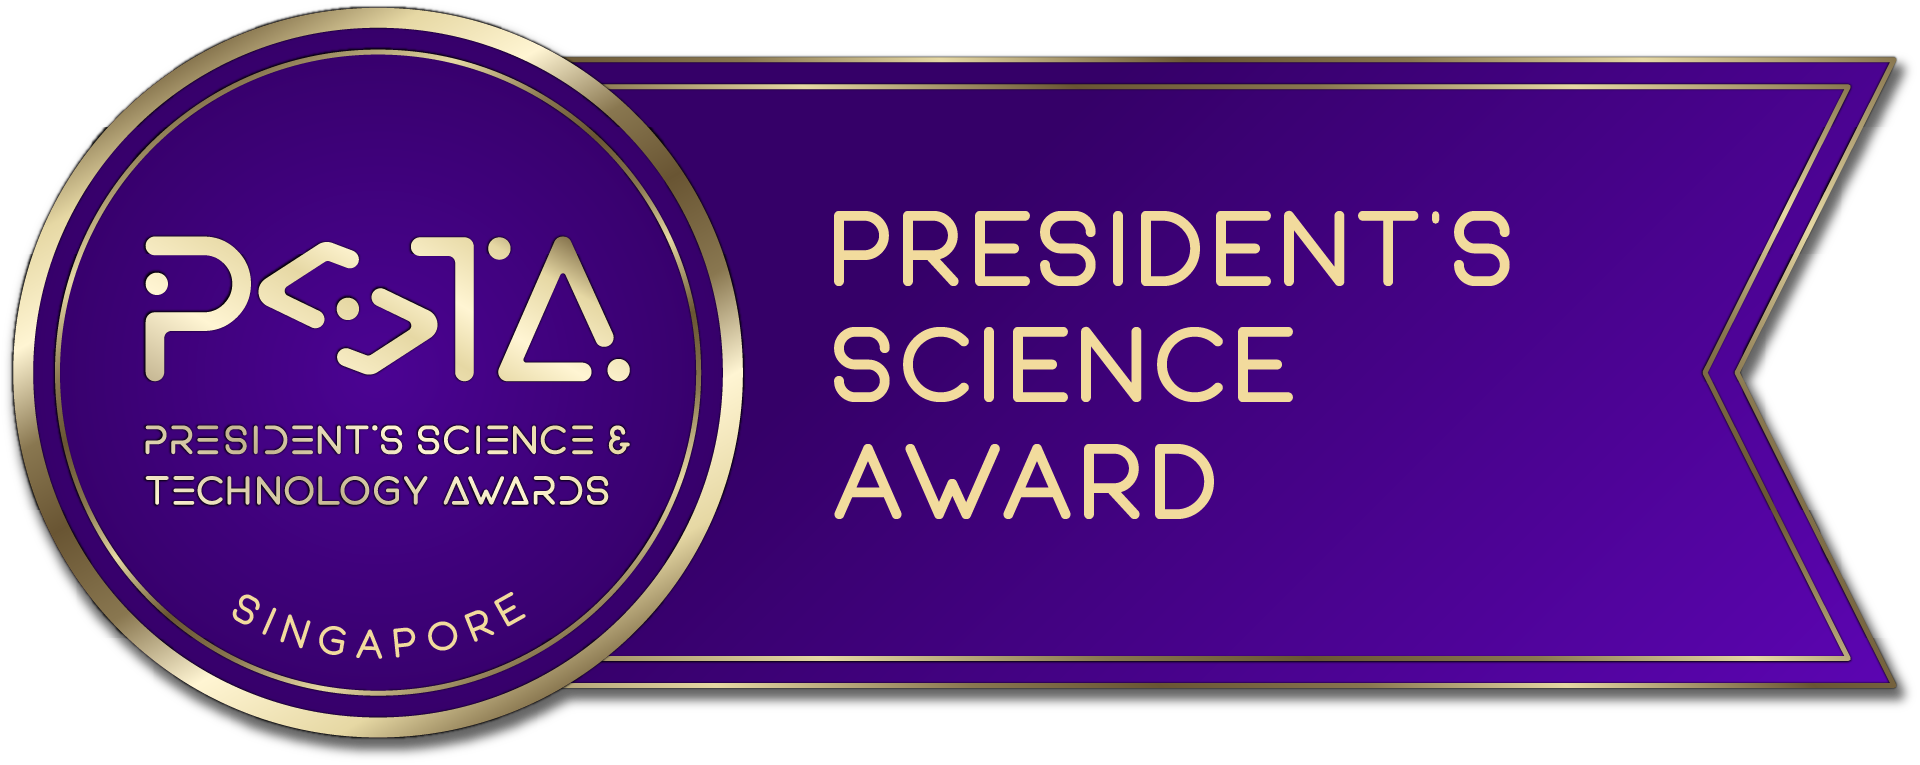 President's Science Award (PSA)